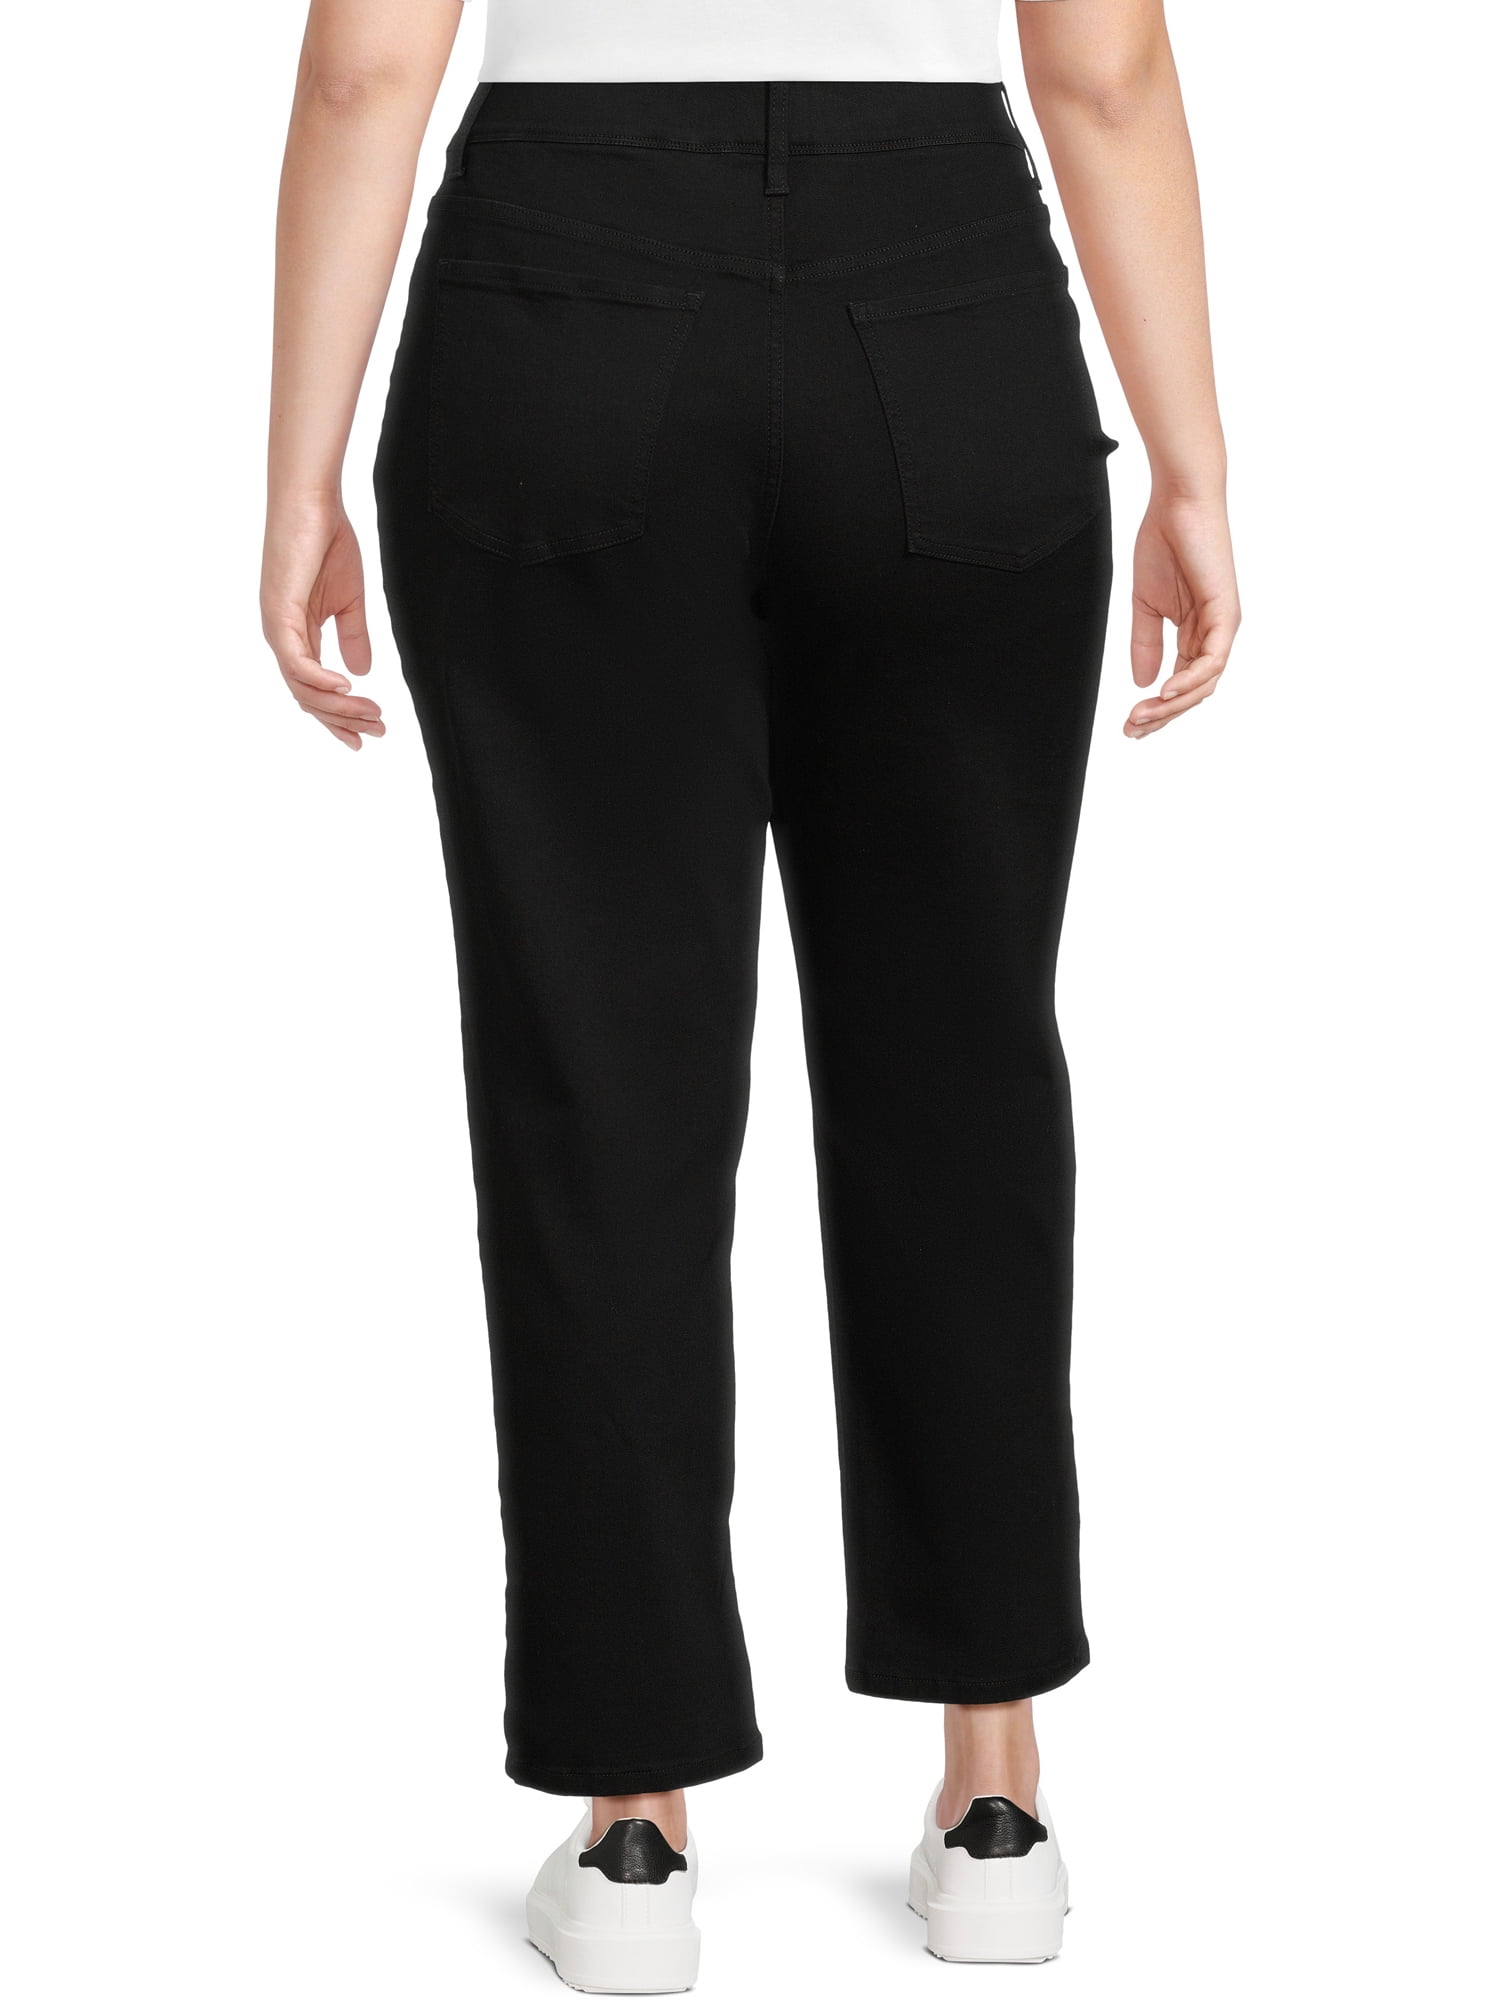 Terra & Sky Women's Jeans Plus Size 4X(28-30W) Straight Tummy